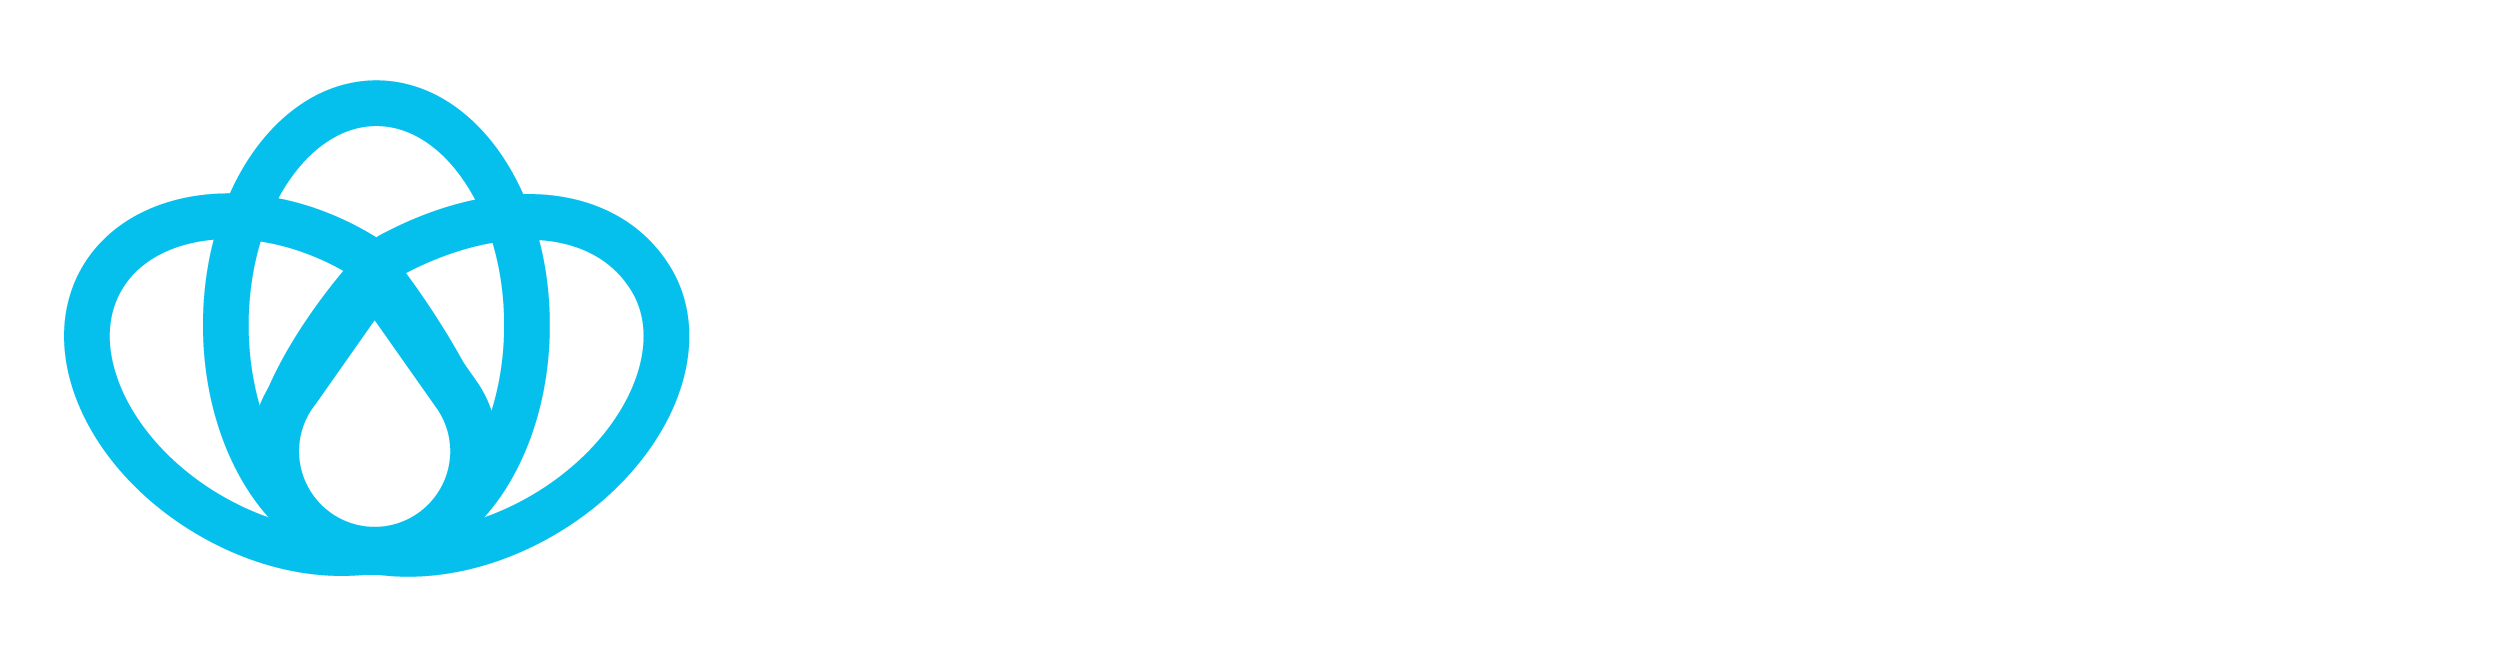 UMPIRE logo